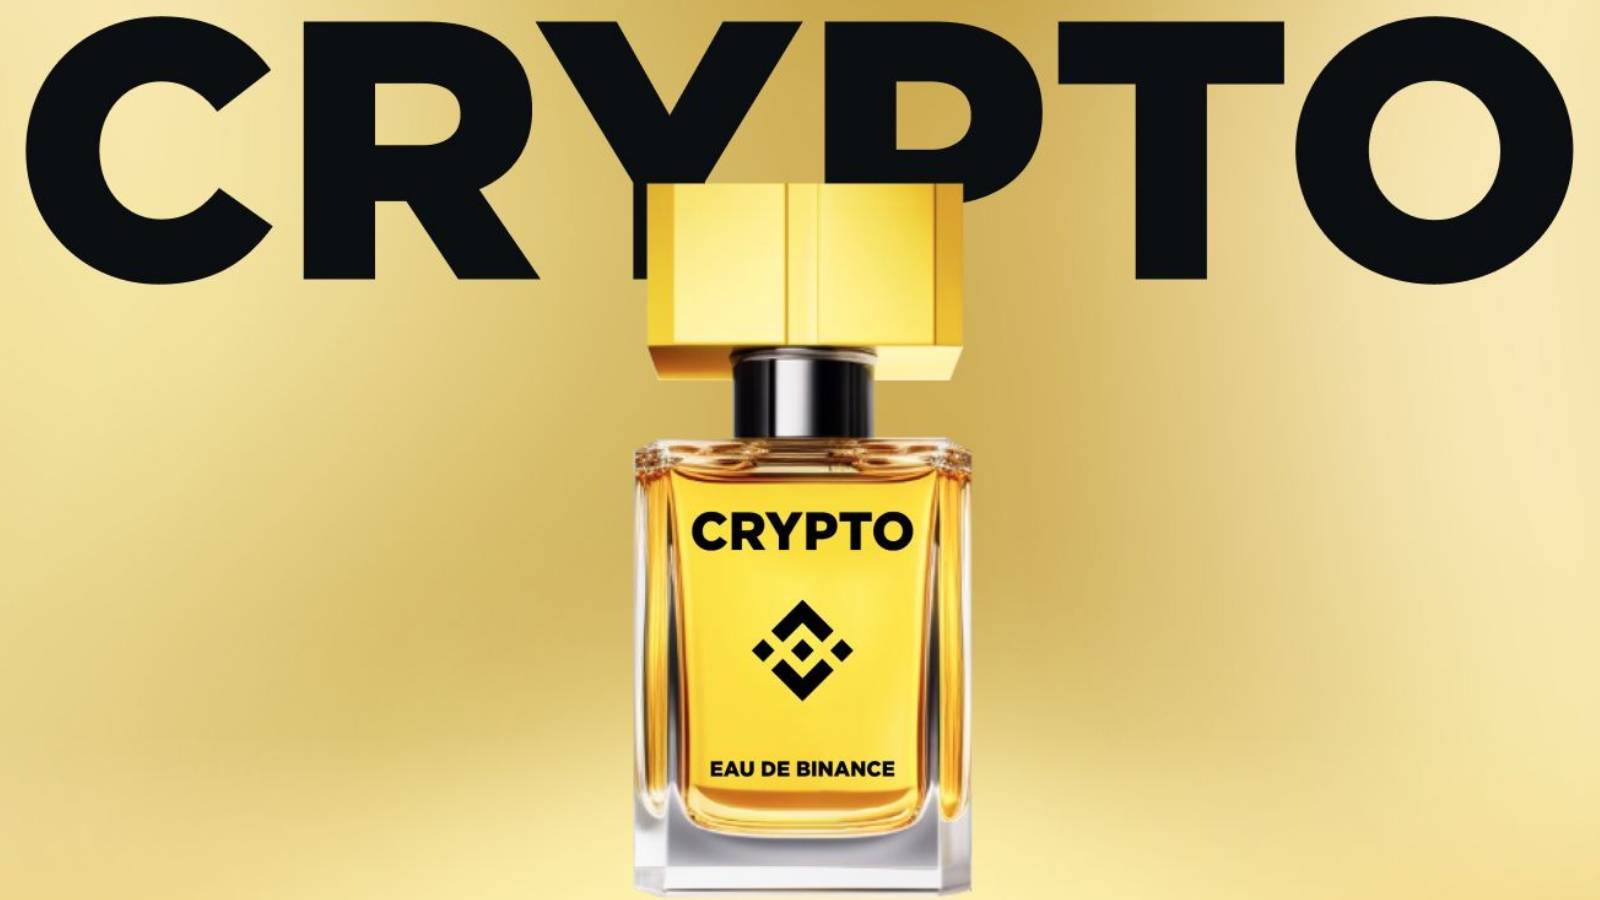 Image of the Binance 'Crypto' perfume bottle.